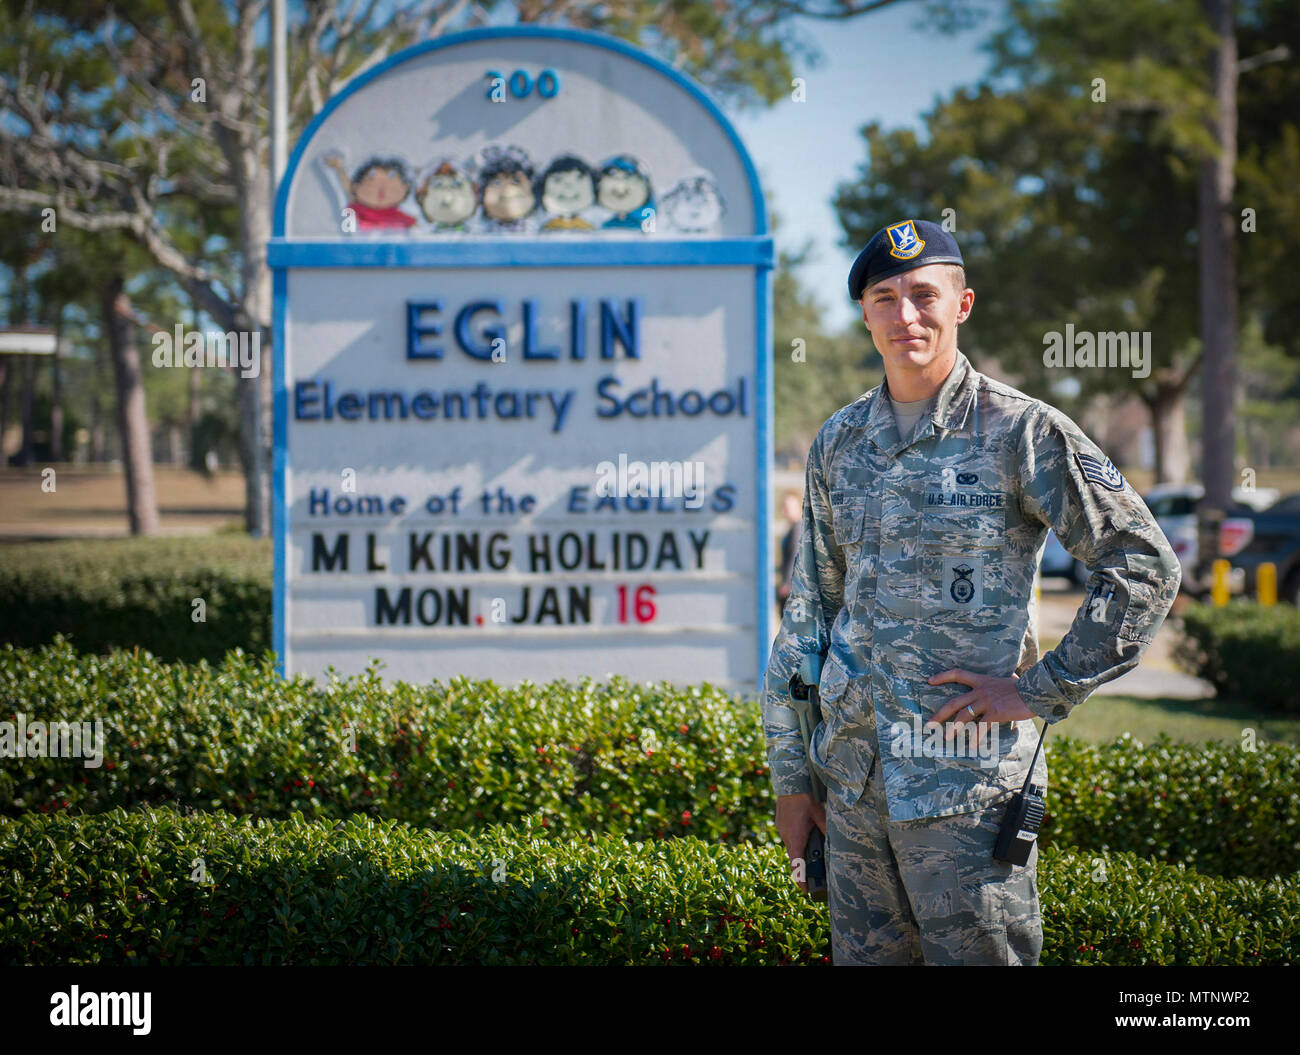 Le s.. Justin Hogg, 96e Escadron des Forces de sécurité, est la nouvelle de  l'agent des ressources de l'école élémentaire d'Eglin le 13 janvier à la  base aérienne d'Eglin, en Floride, il